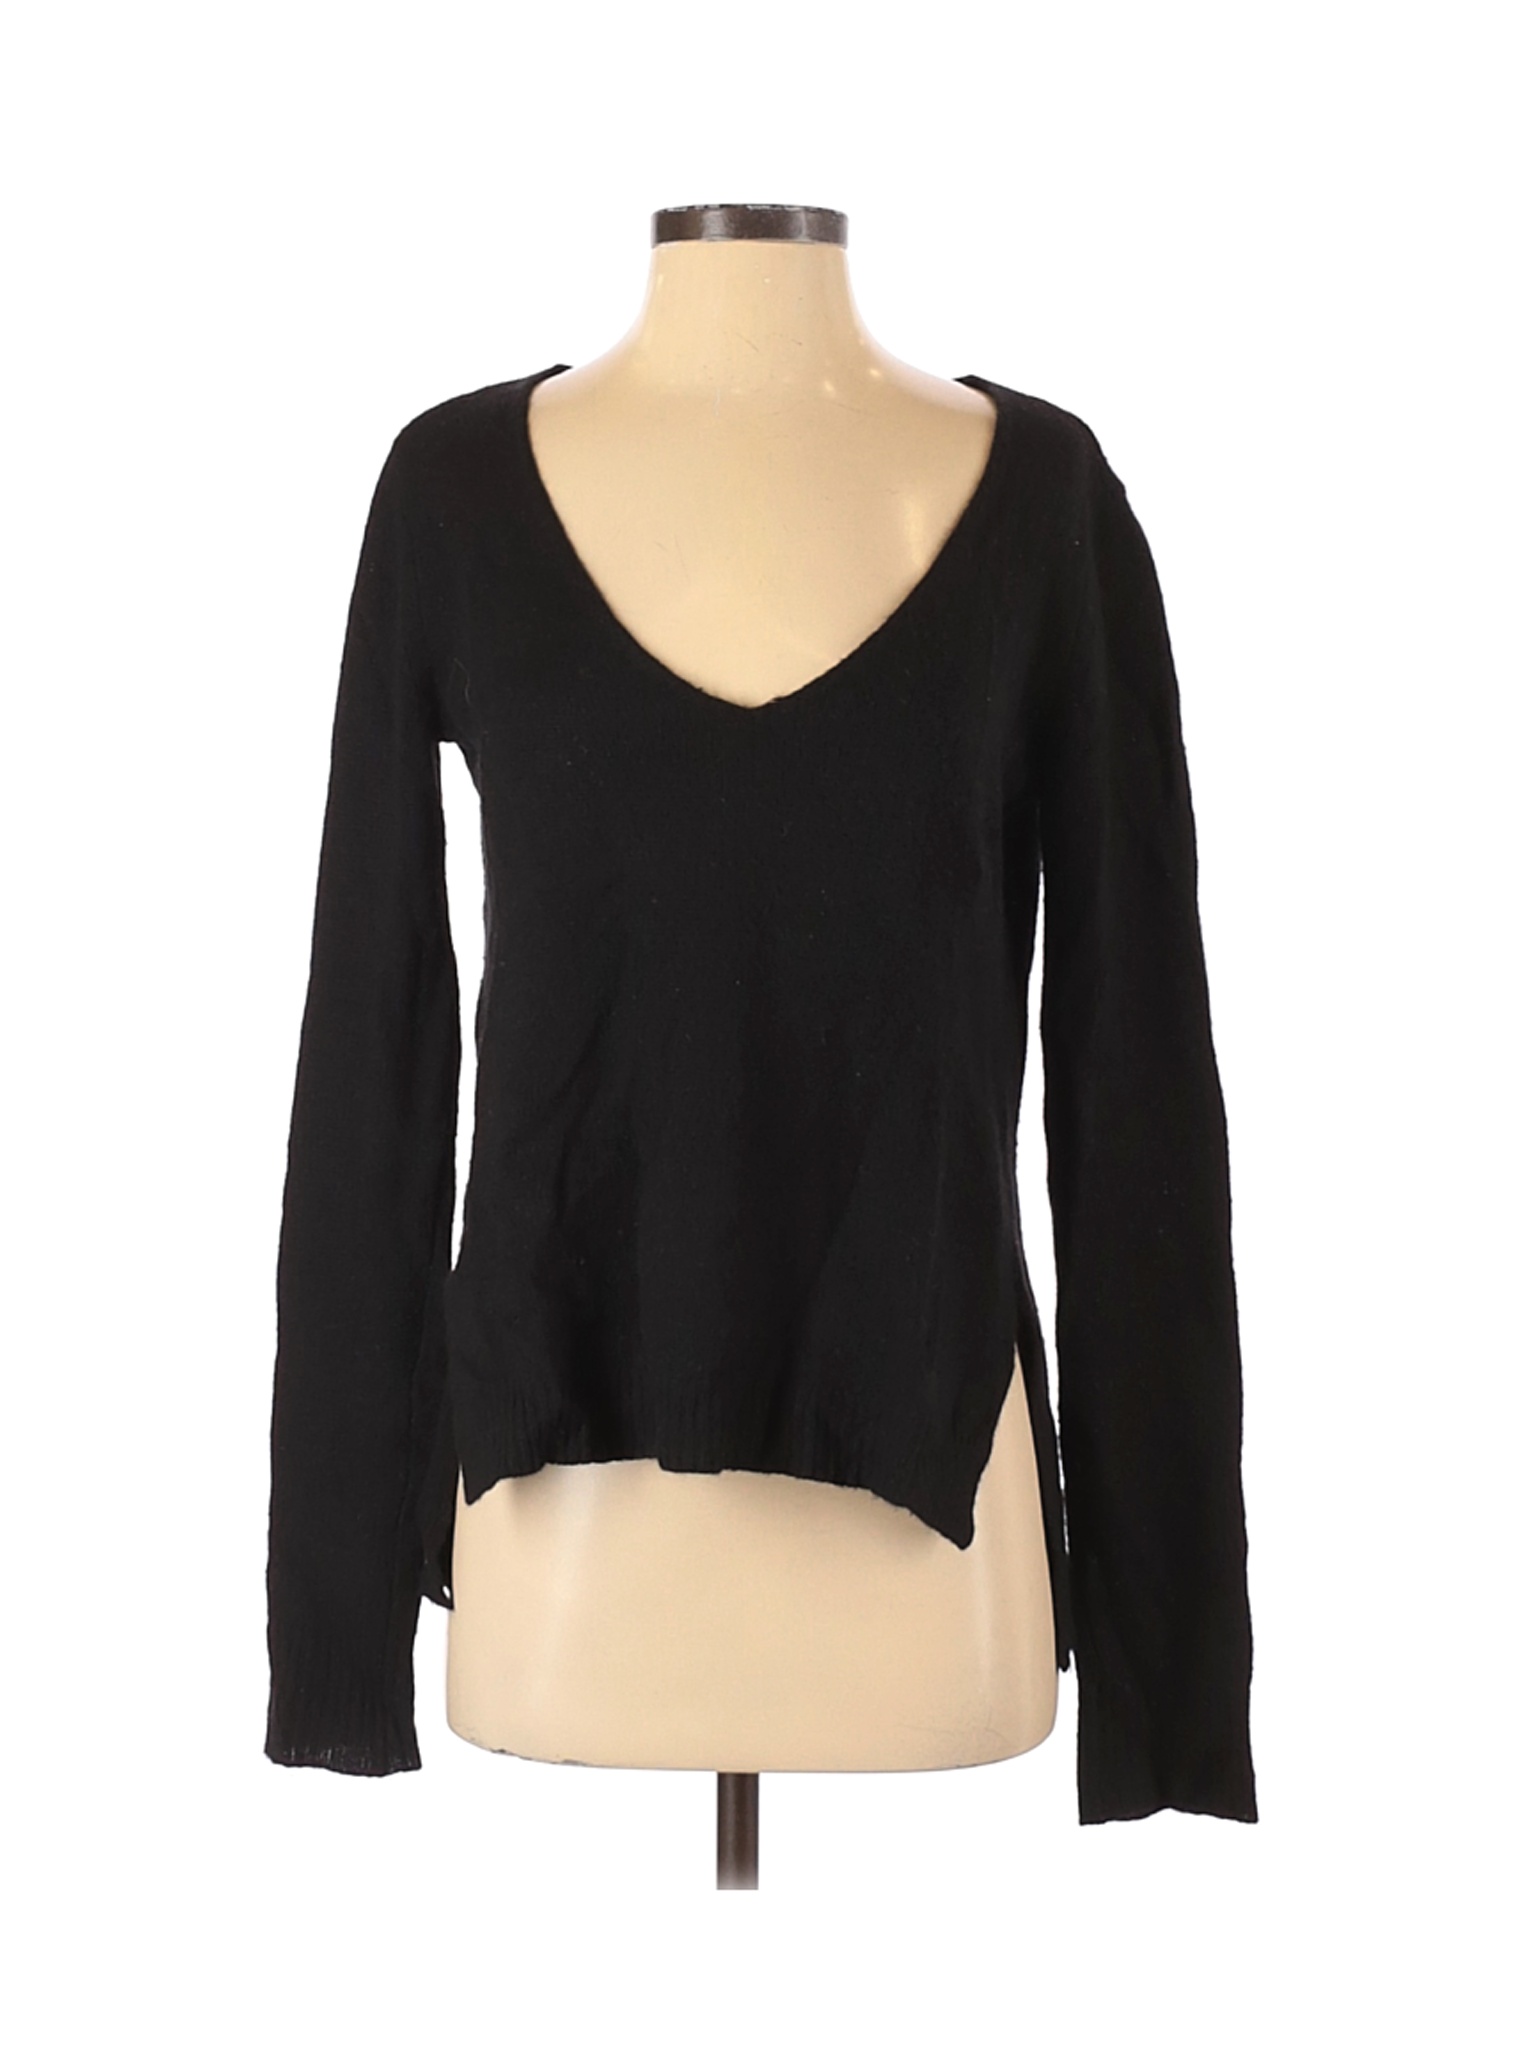 Calypso St. Barth Women Black Pullover Sweater S | eBay